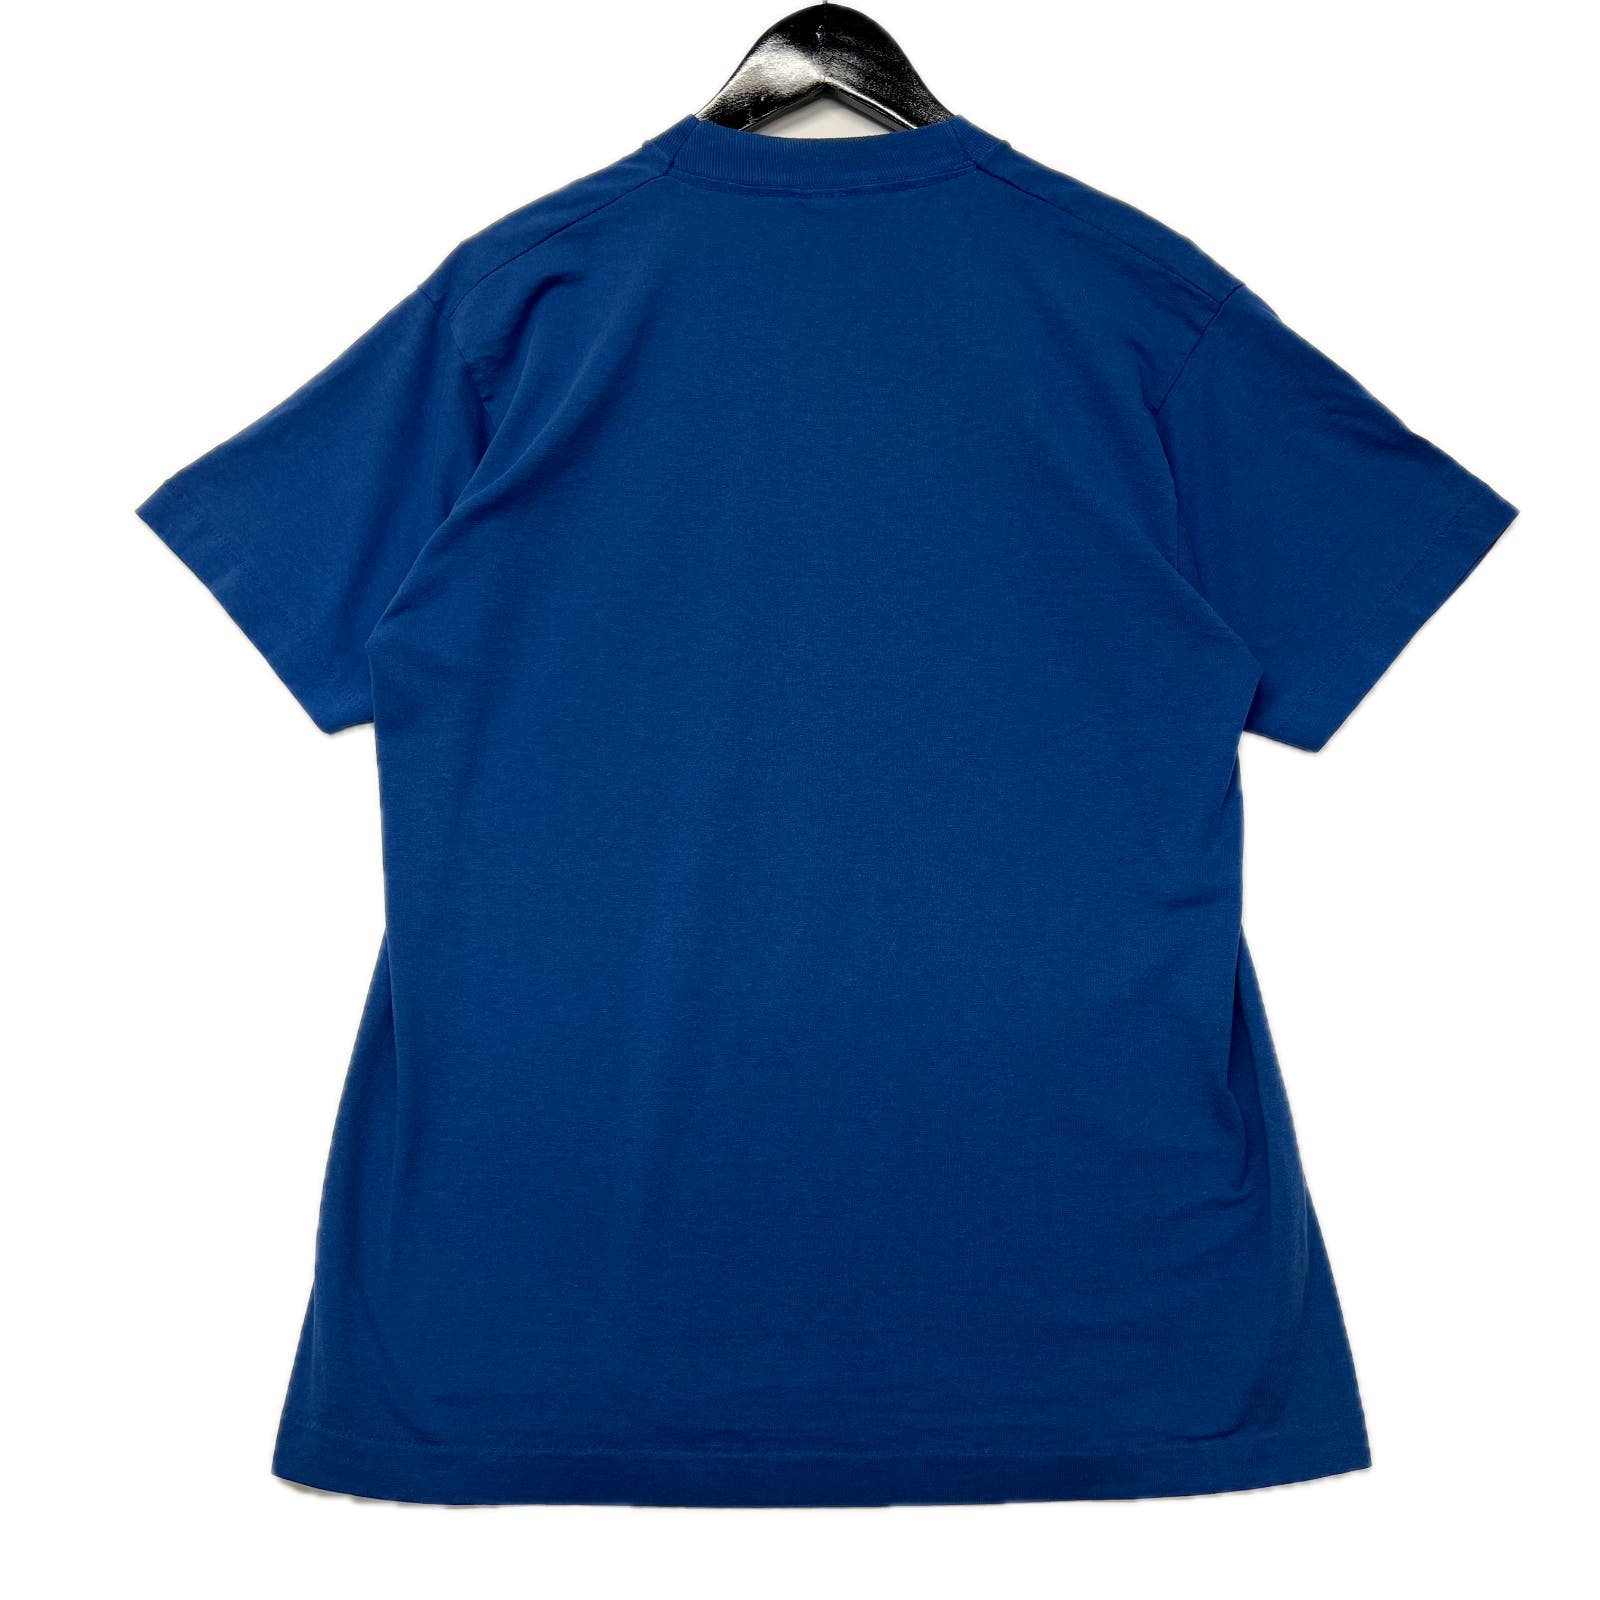 Vintage 90s Kentucky Wildcats Basketball Blue T-Shirt Size L